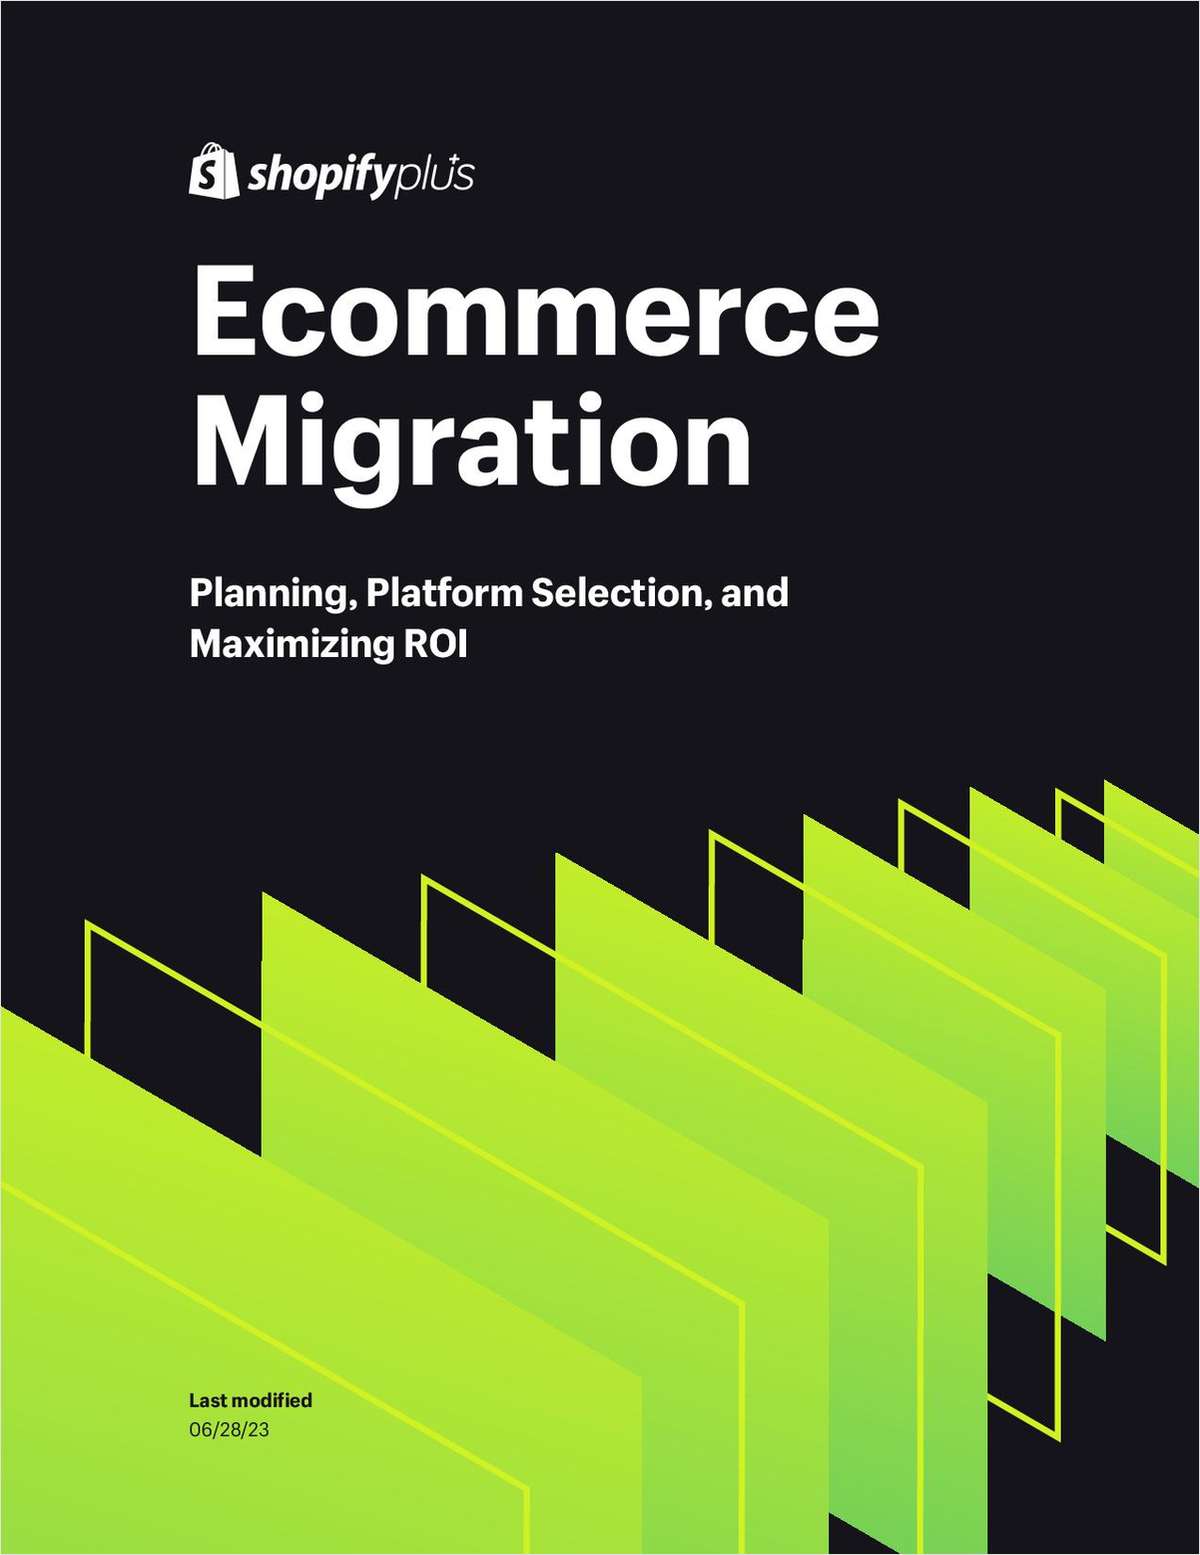 Effectively Navigate Ecommerce Platform Migration